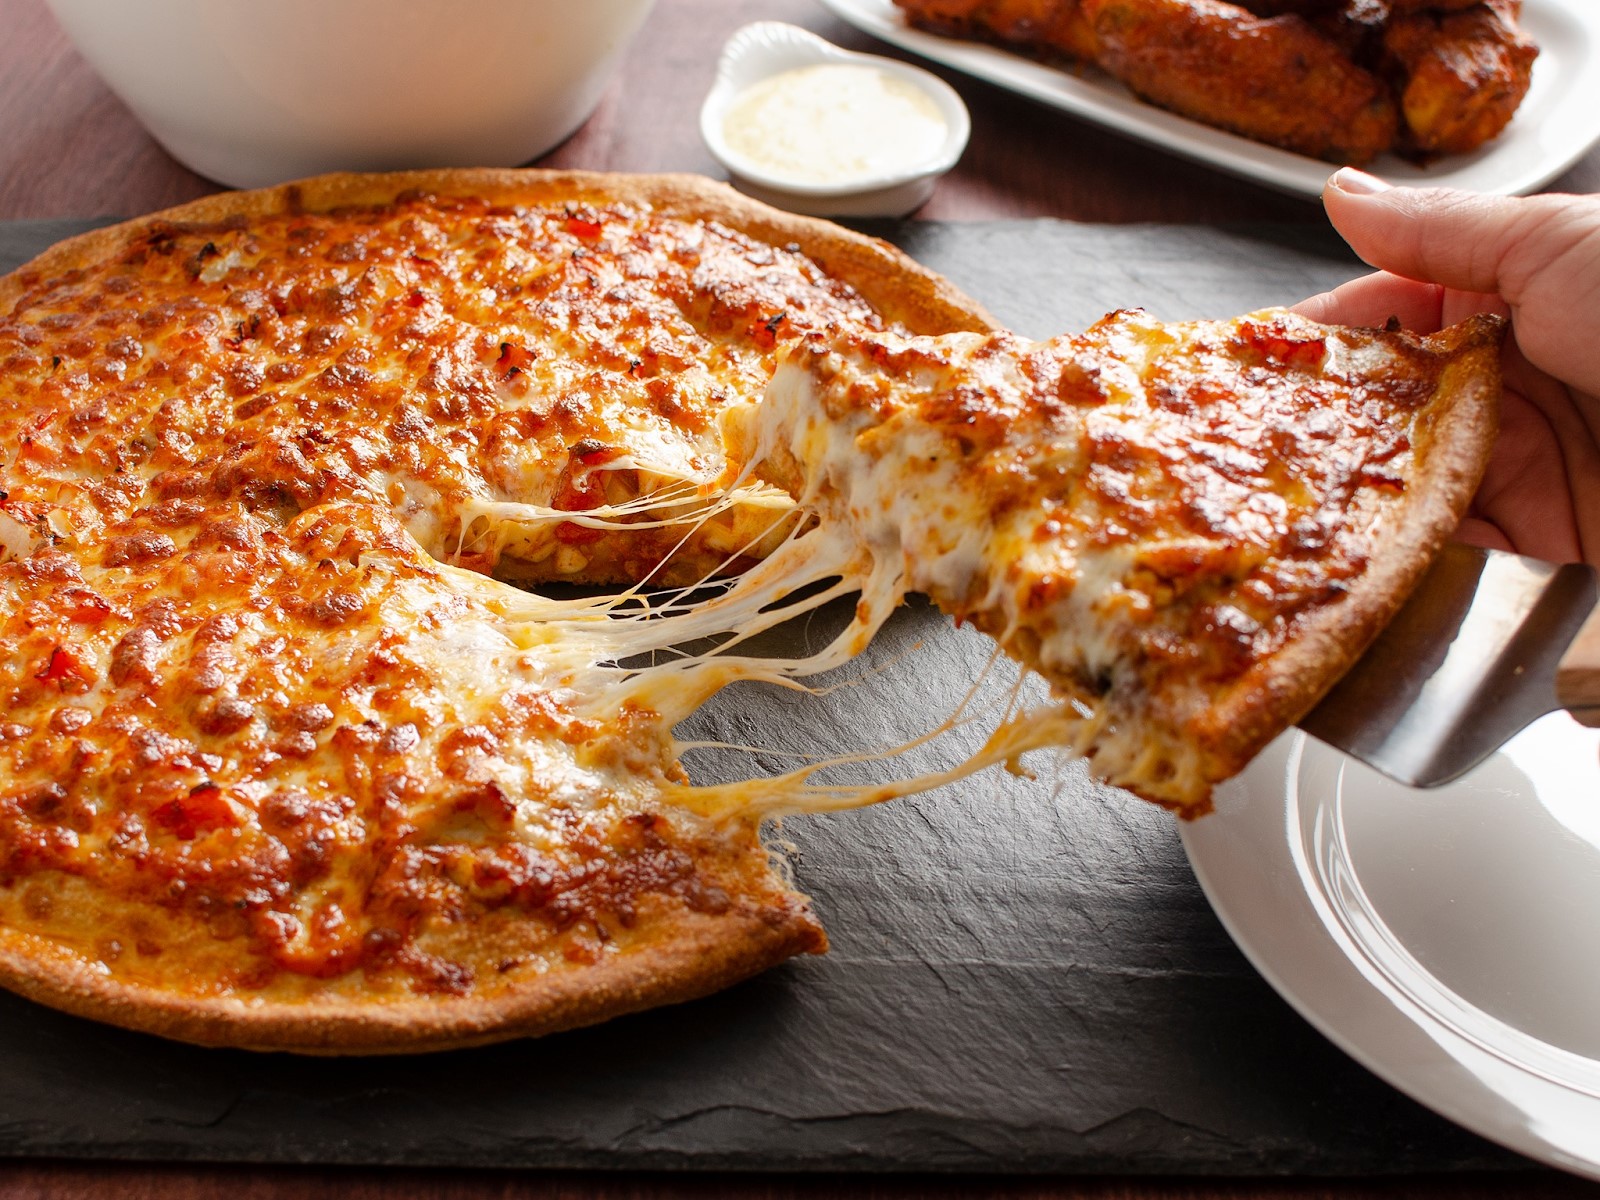 chiếc pizza hấp dẫn bởi lớp phô mai kéo sợi béo ngậy